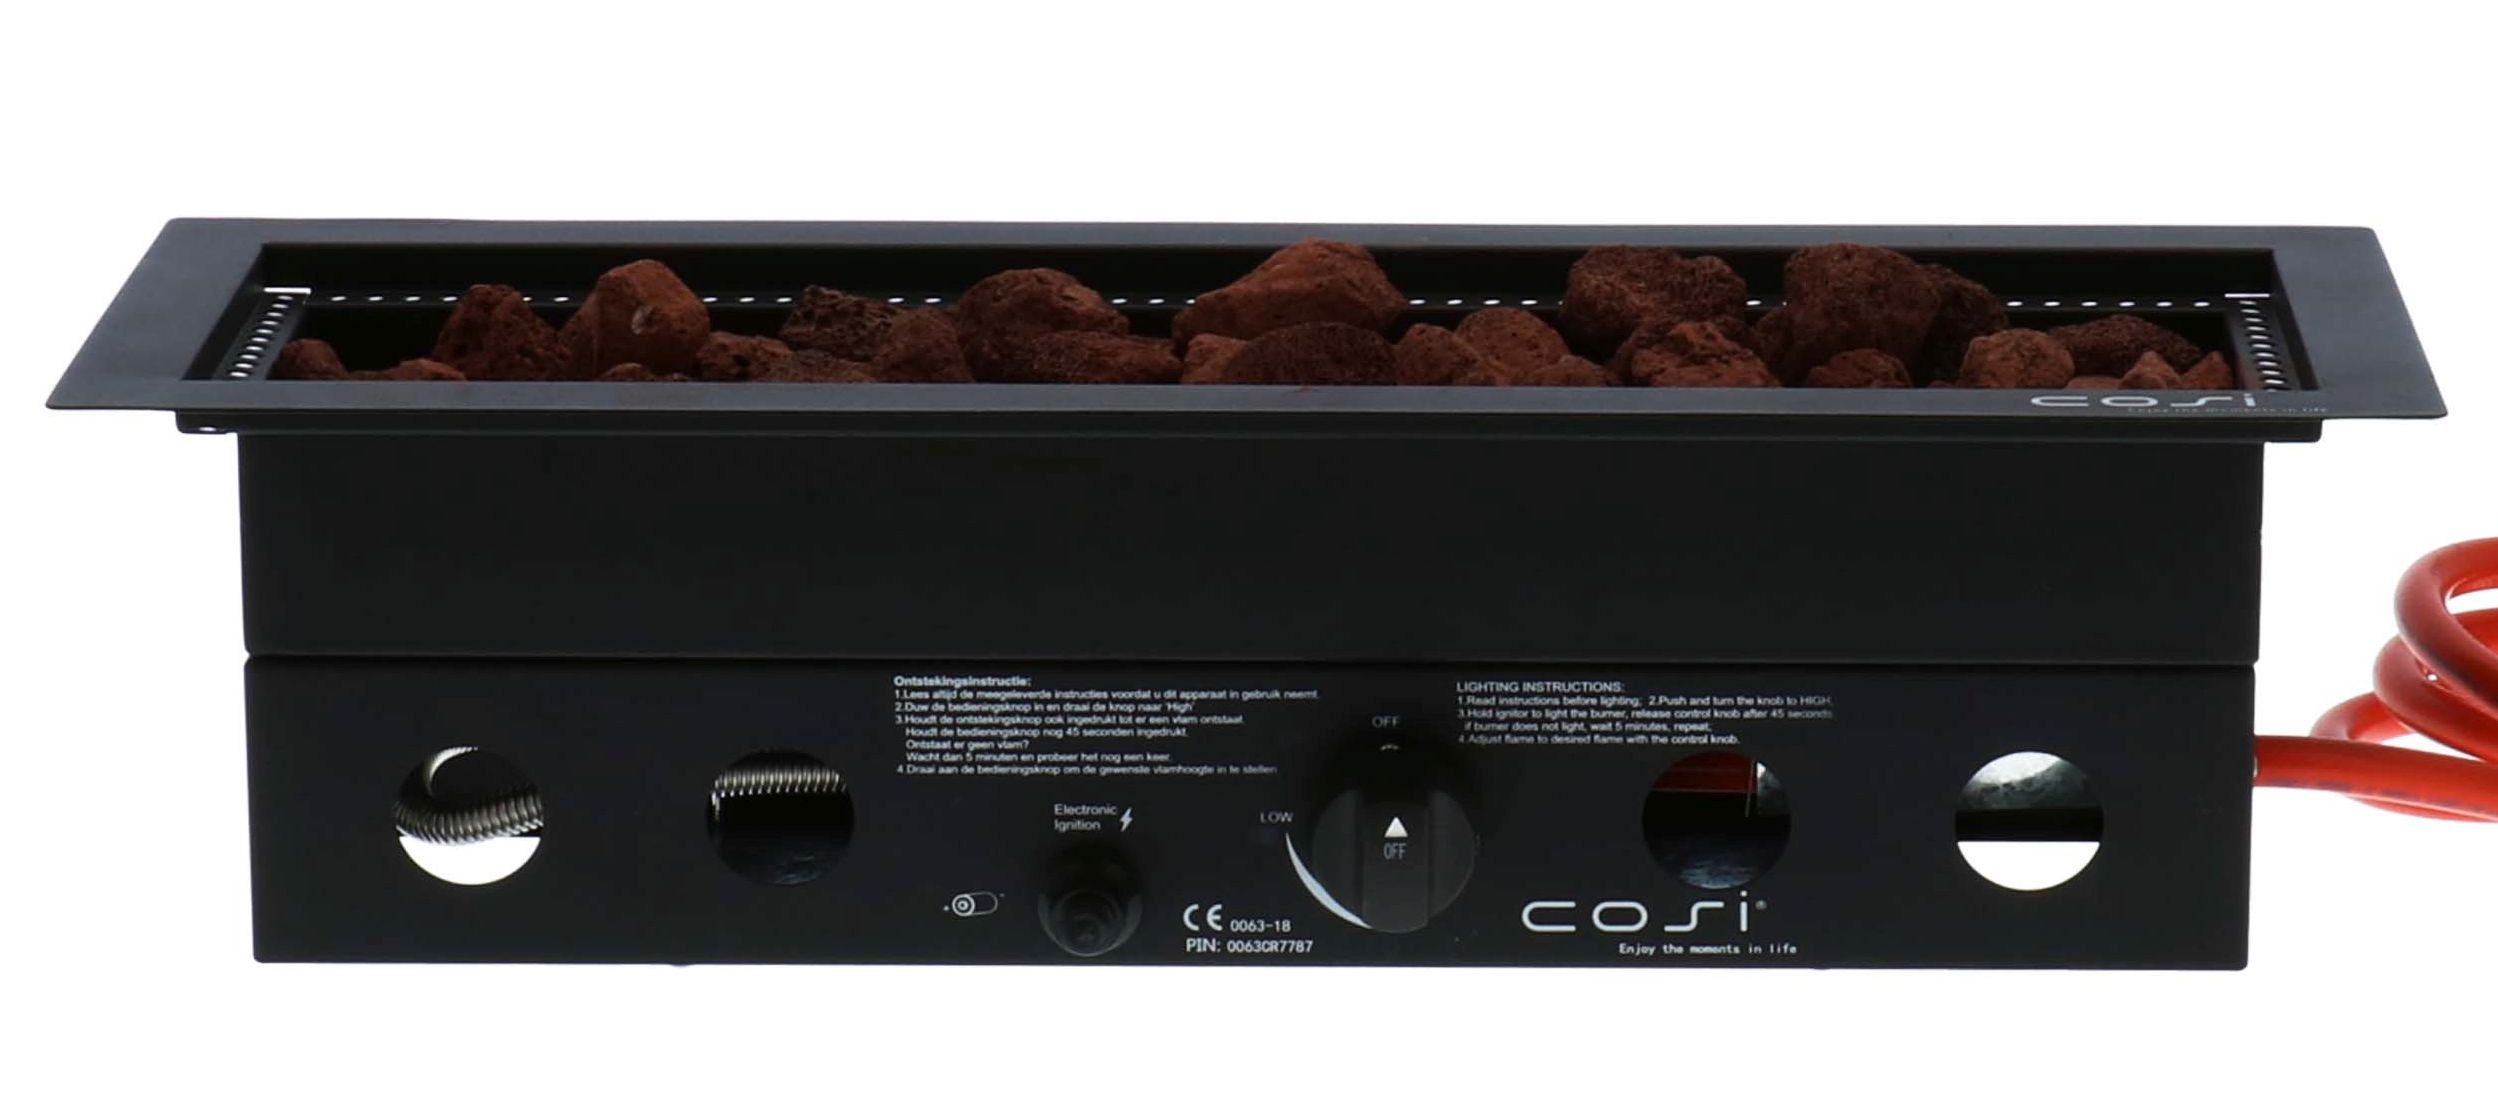 Cosi vuurtafels en gaslantaarns Cosi inbouwbrander Cosiburner, afm. 60 x 22 cm x 16,5 cm, 9kW, rechthoekig zwart